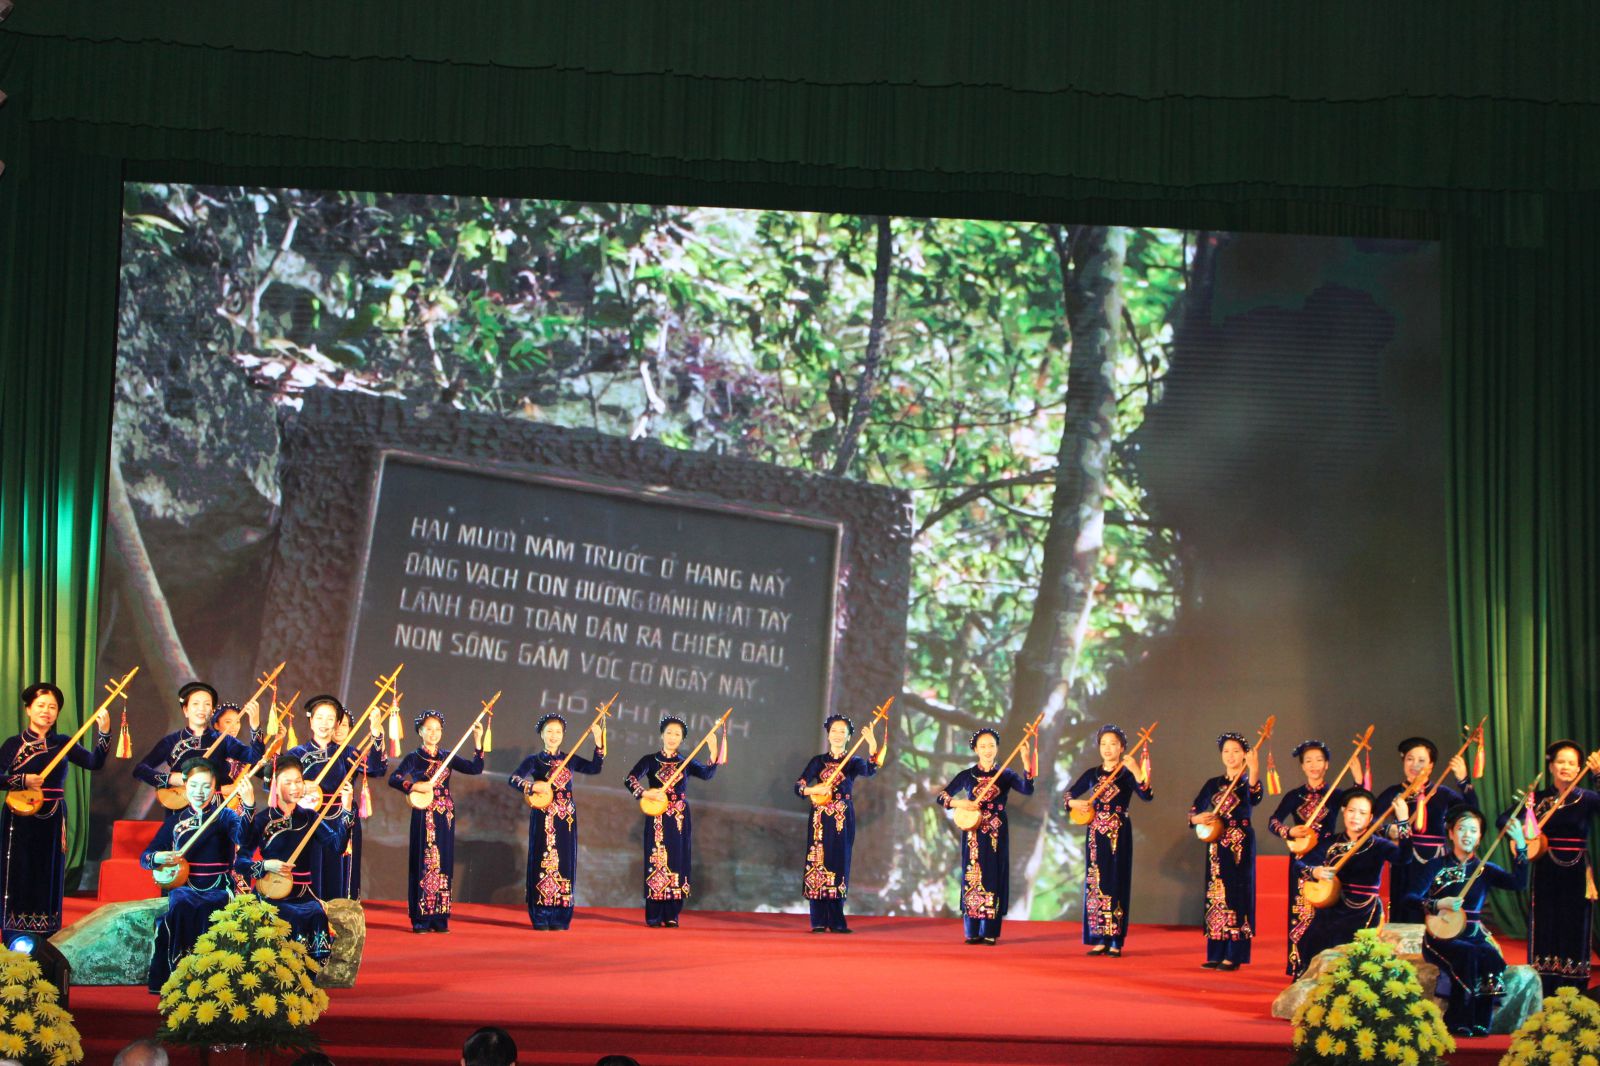 Chương trình văn nghệ chào mừng 50 năm thực hiện di chúc của Chủ tịch Hồ Chí Minh